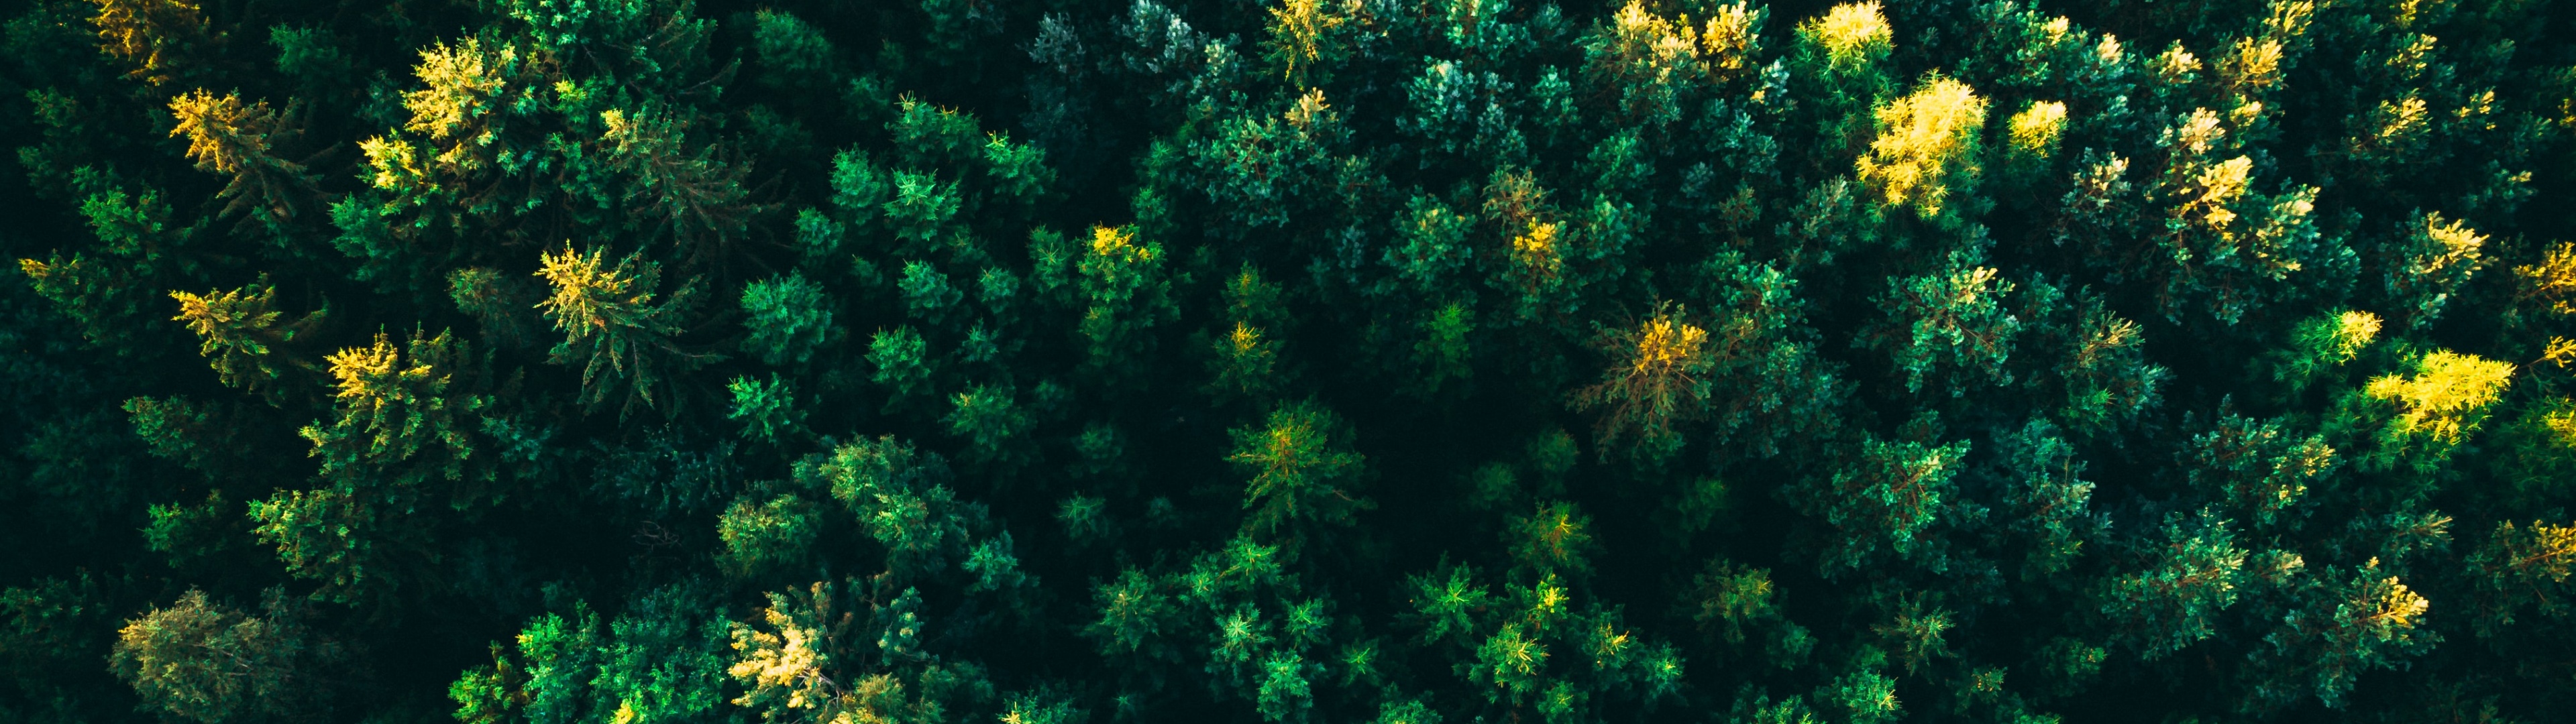 Hình nền cây xanh rừng 4K mang lại cho bạn cảm giác như đang mặc khẳng định với tự nhiên, với vẻ đẹp hoang sơ và tươi mới của những người cây xanh rừng. Hình ảnh vô cùng sắc nét với độ phân giải 4K, cho phép bạn cảm nhận tất cả chi tiết nhỏ nhất của cây xanh rừng, tạo ra một màn hình máy tính đẹp và sống động.